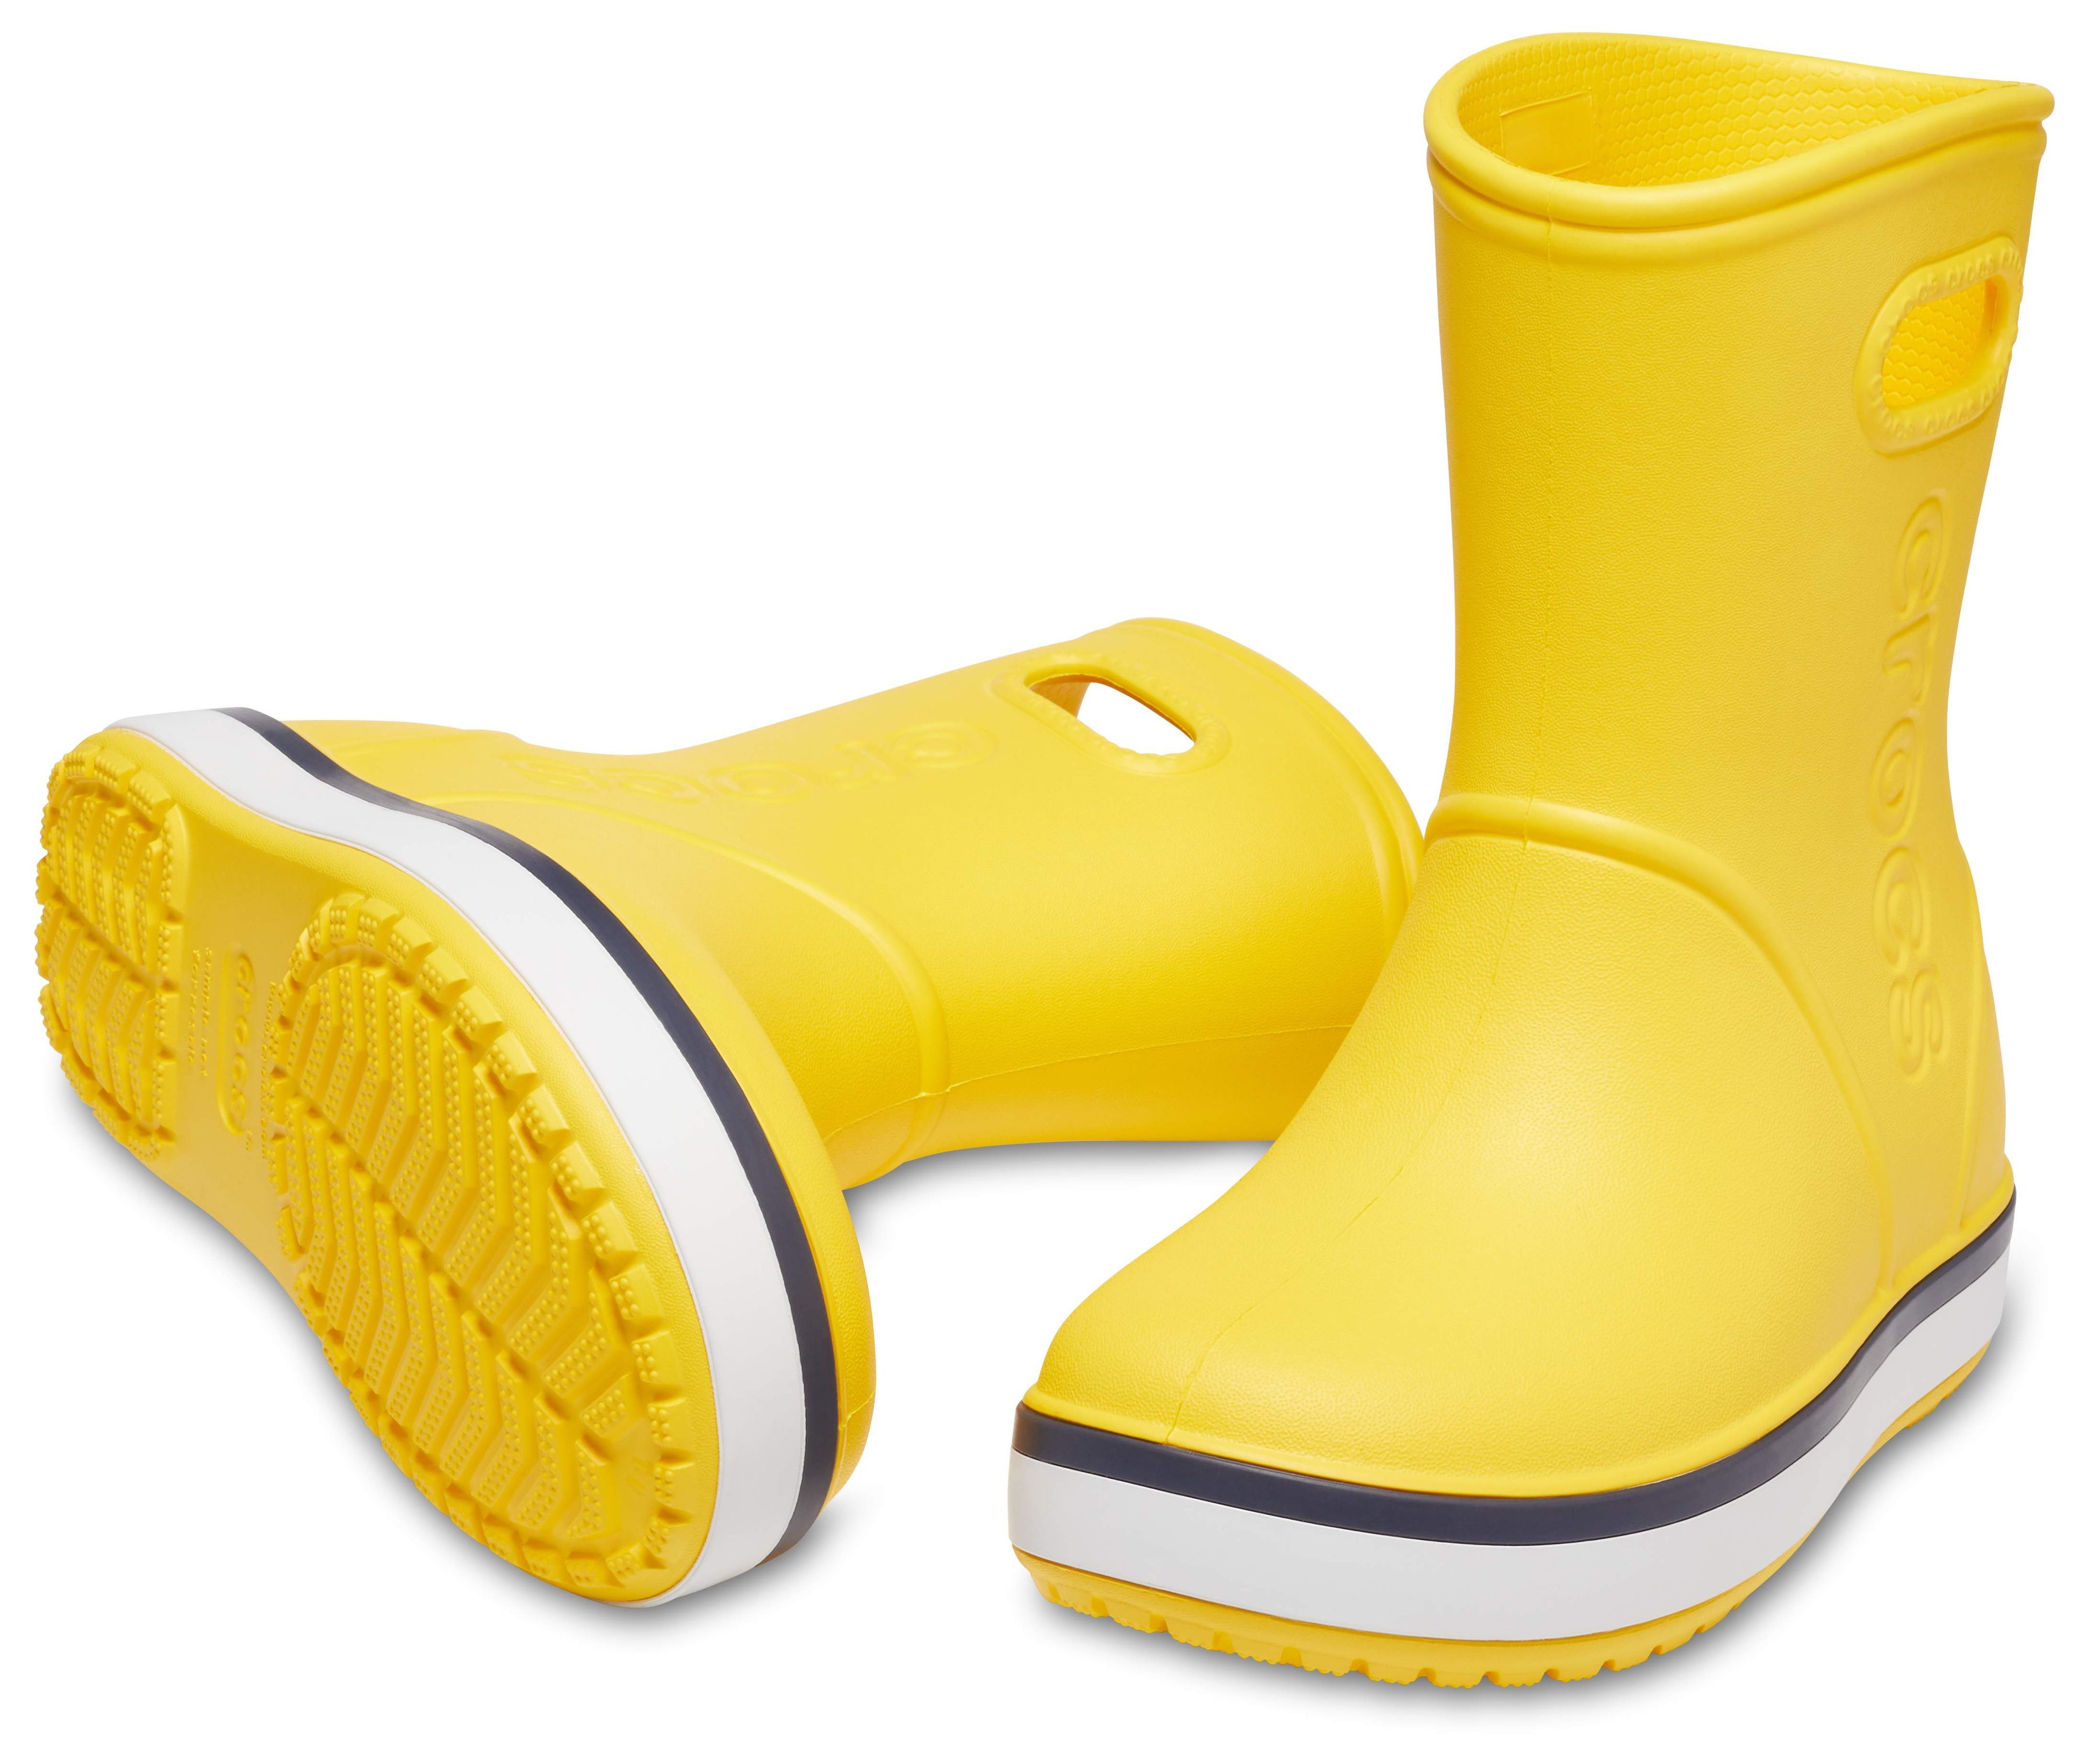 Резиновые crocs женские. Резиновые сапоги Crocs Crocband Rain Boot. Желтые сапоги крокс. Сапоги Crocband Rain Boot. Крокс желтые резиновые сапоги.